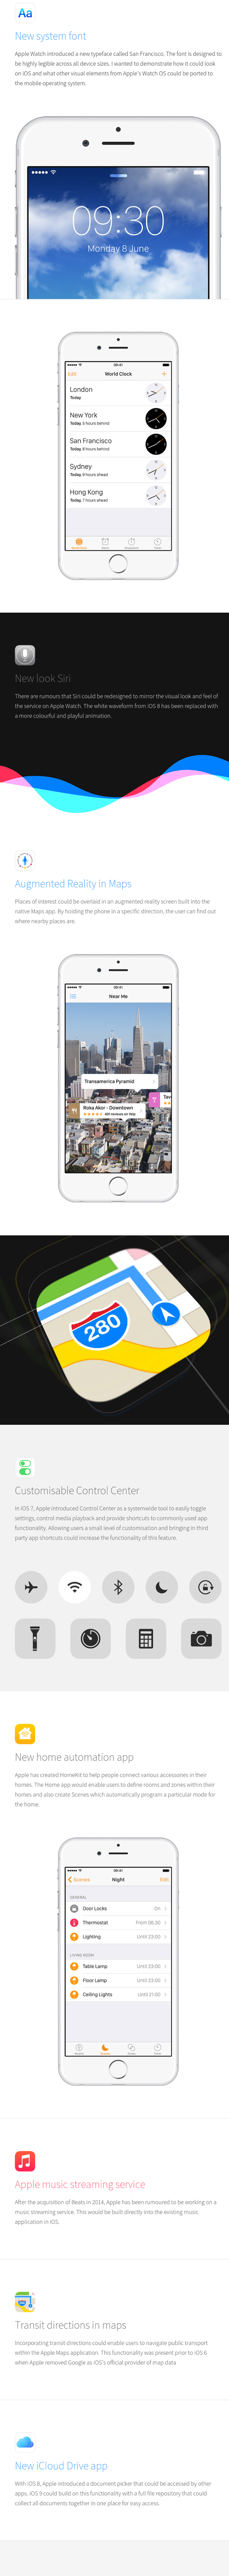 iOS-9-concept